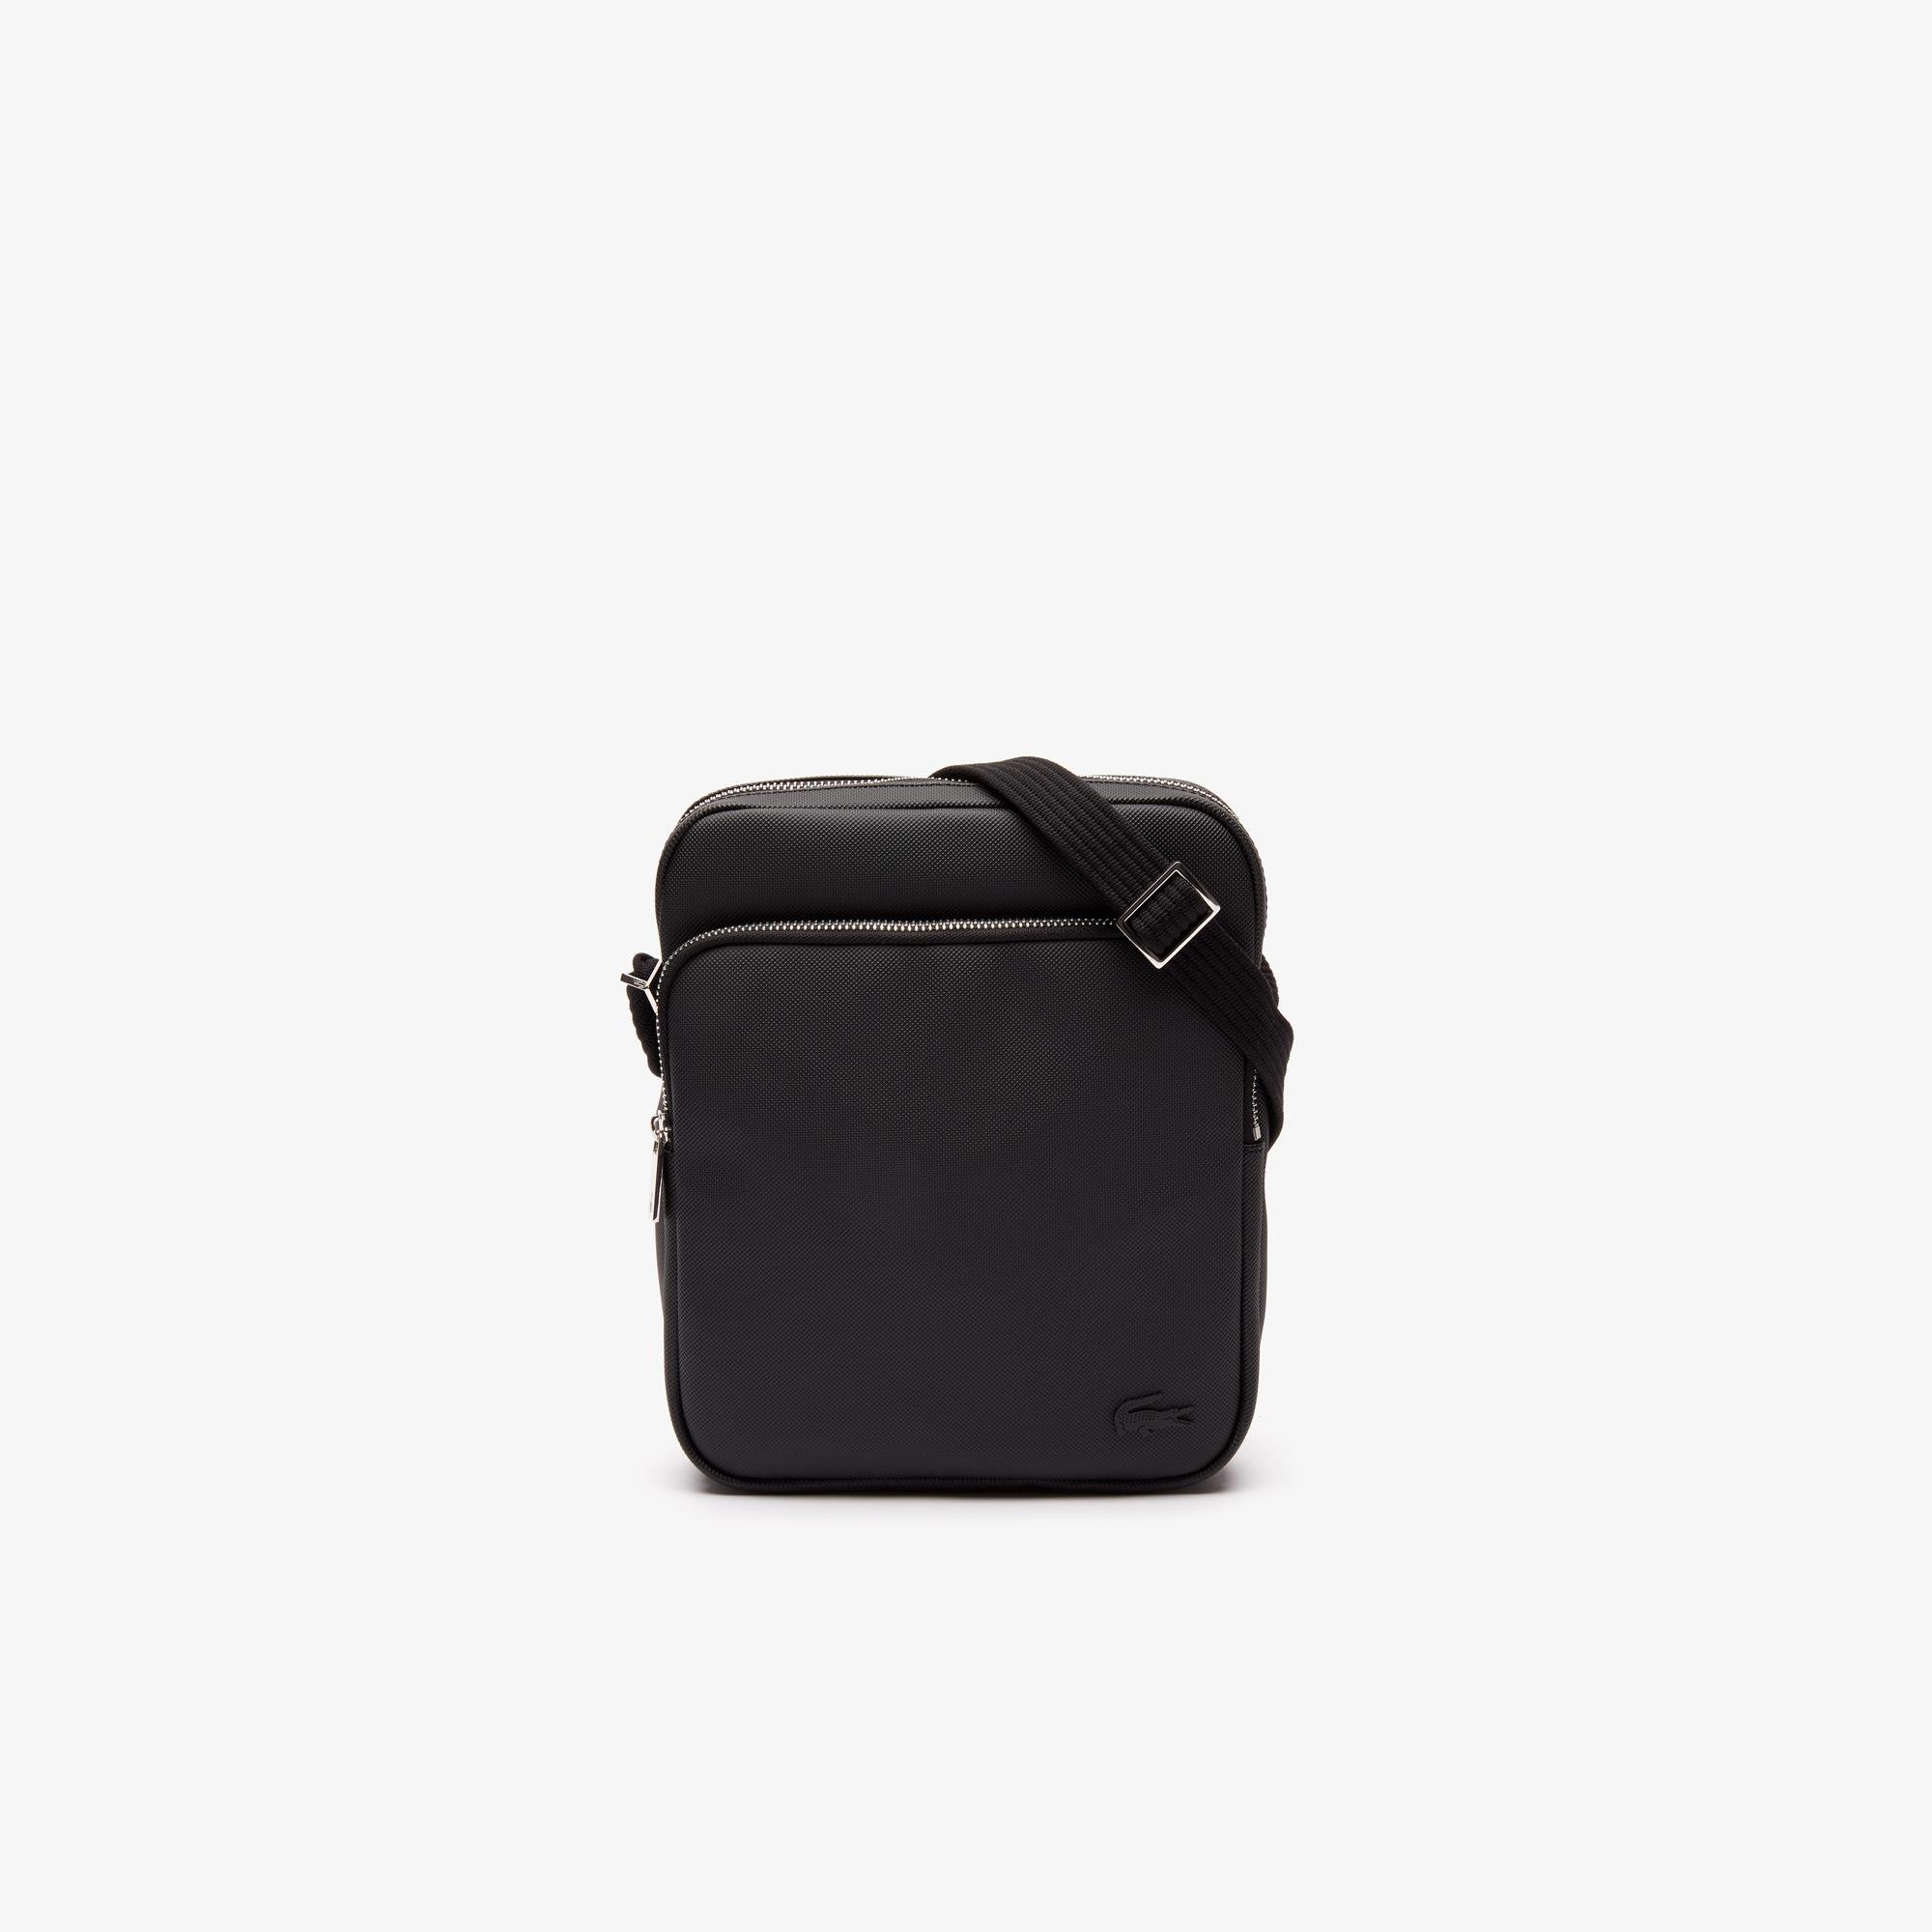 Lacoste Men's Classic Petit Piqué Double Bag